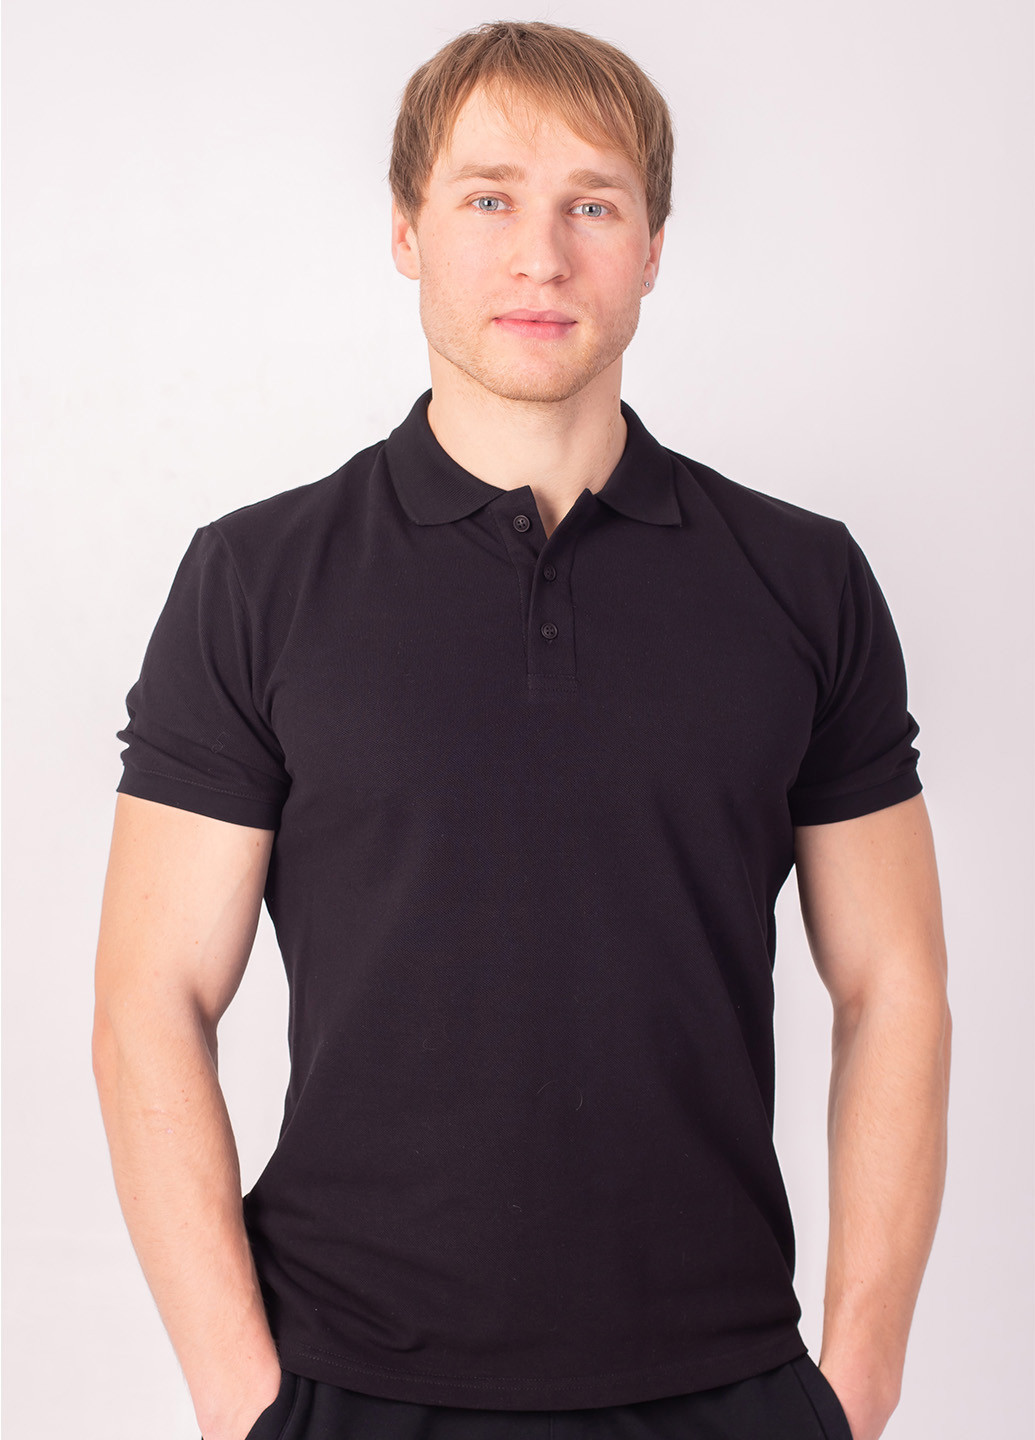 Черная футболка-5720-01 поло муж. черный для мужчин TvoePolo однотонная